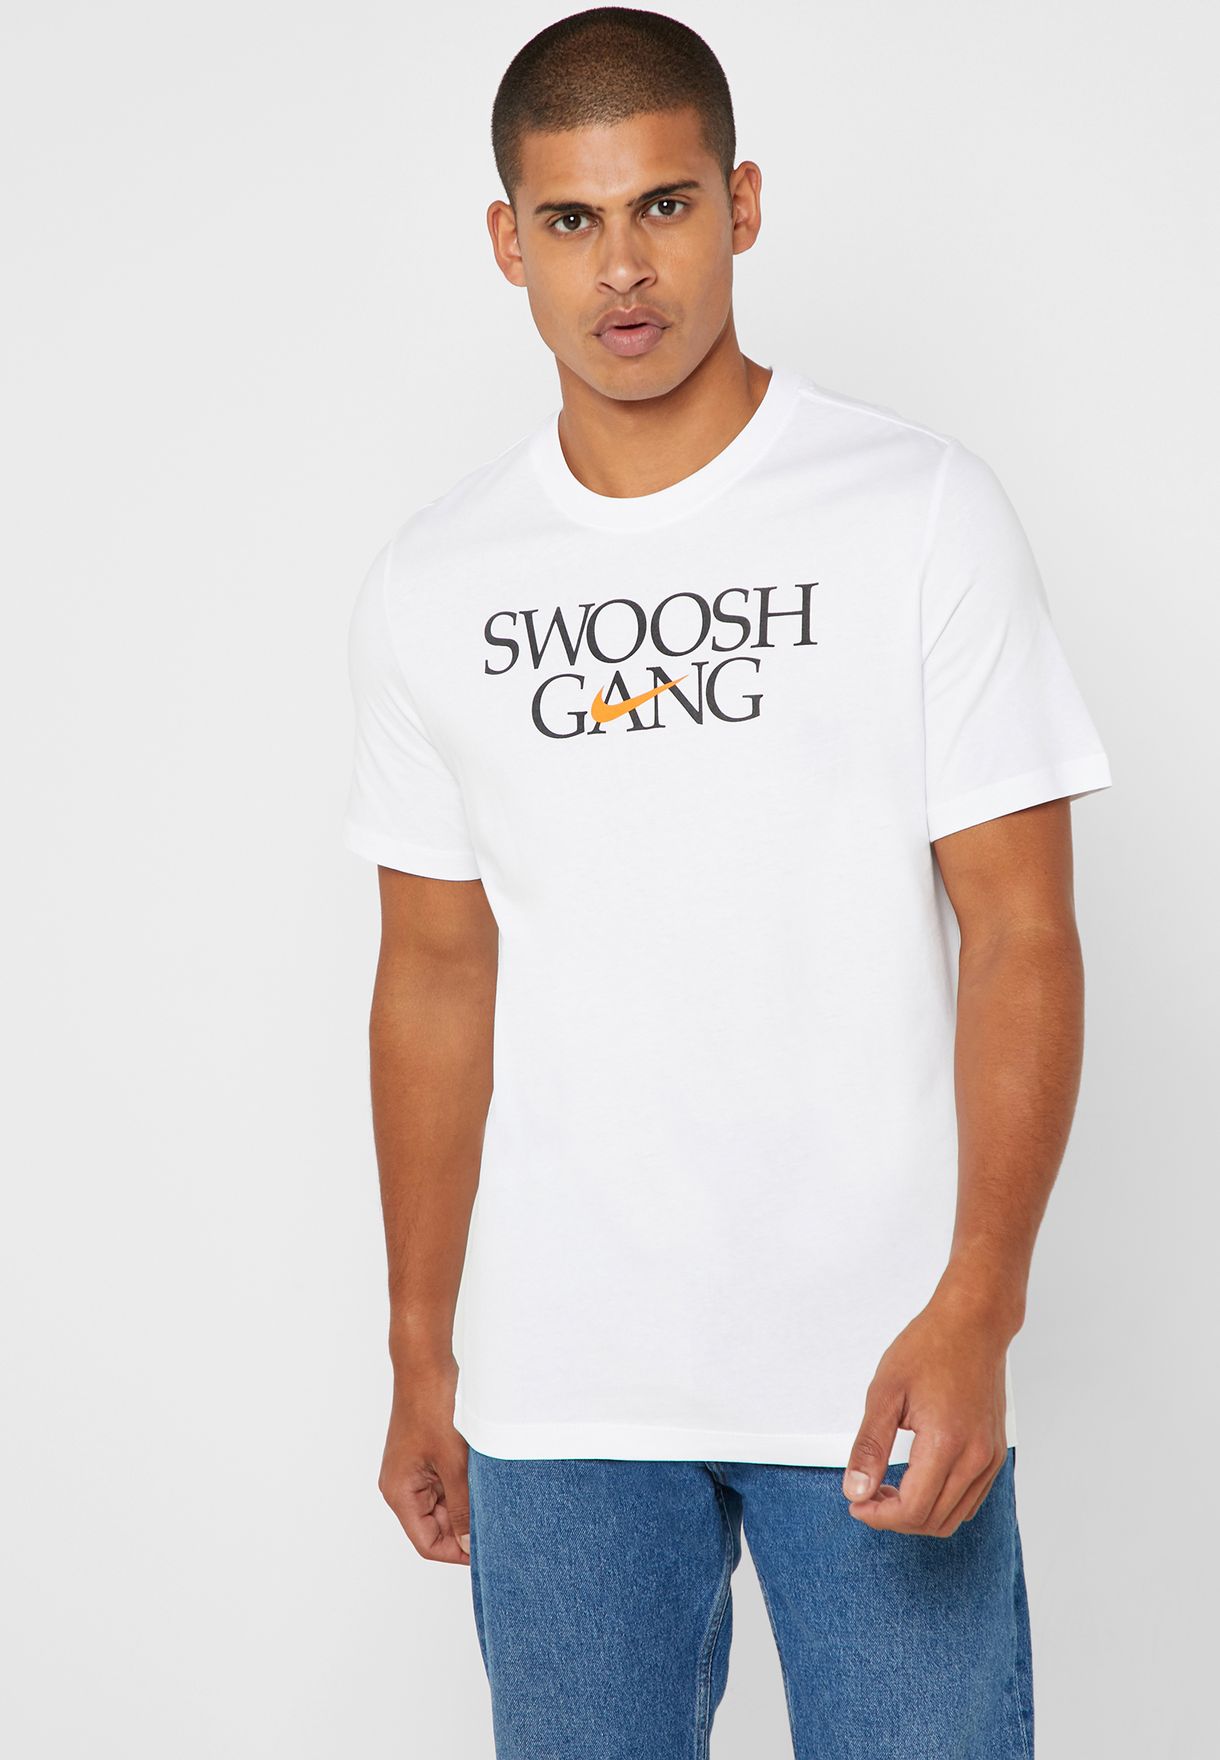 swoosh gang nike shirt